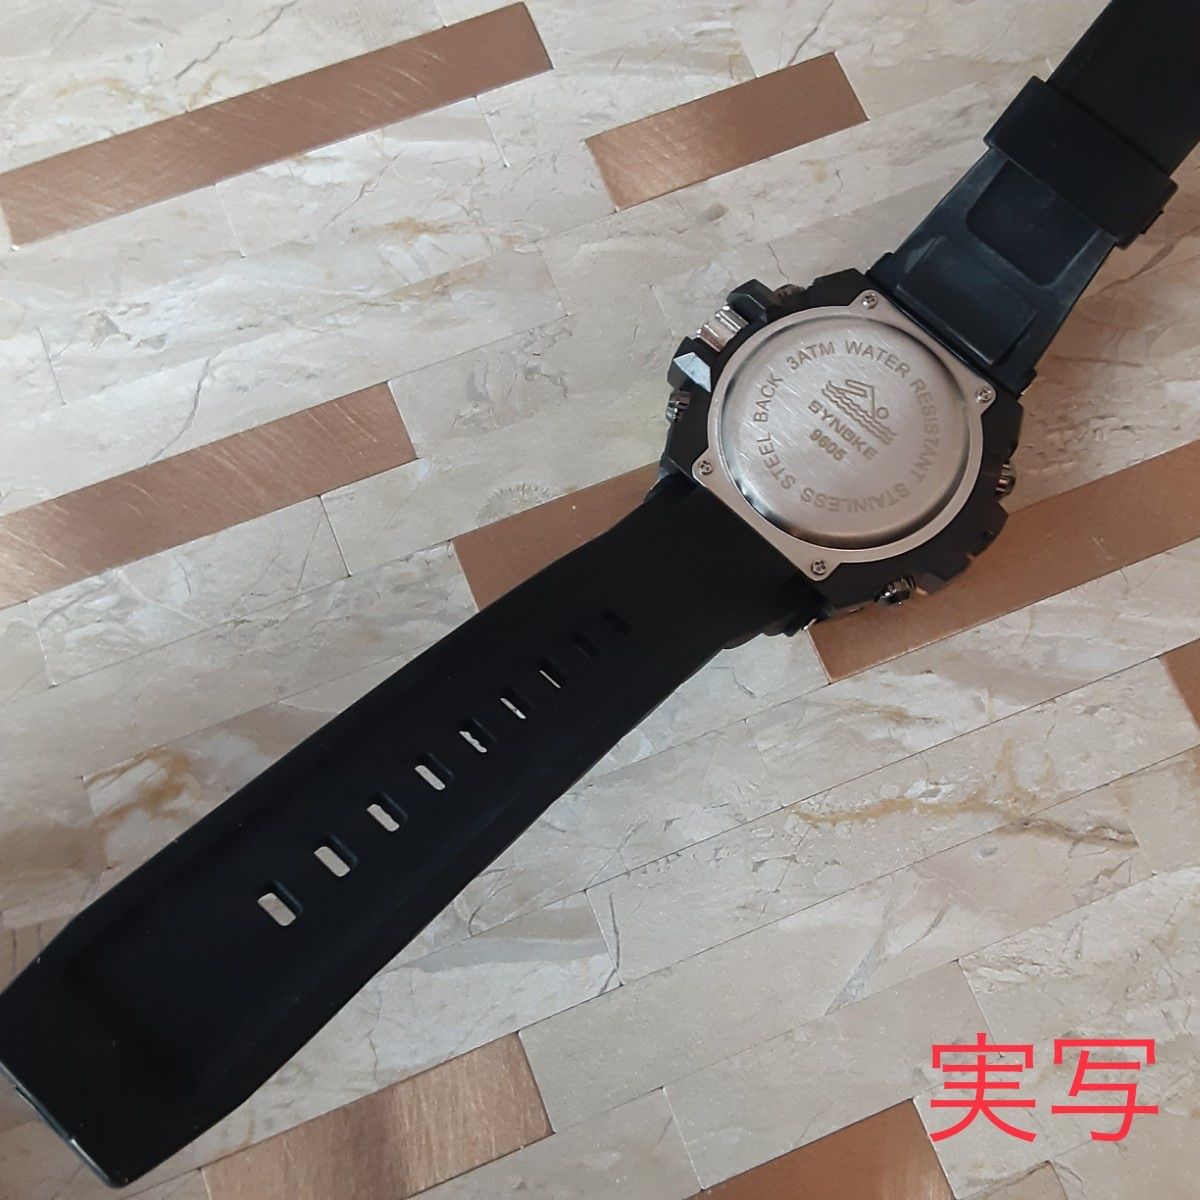 16送料込 海外 SINOKE 腕時計デジタル 多機能 LED ブラックゴールド-6